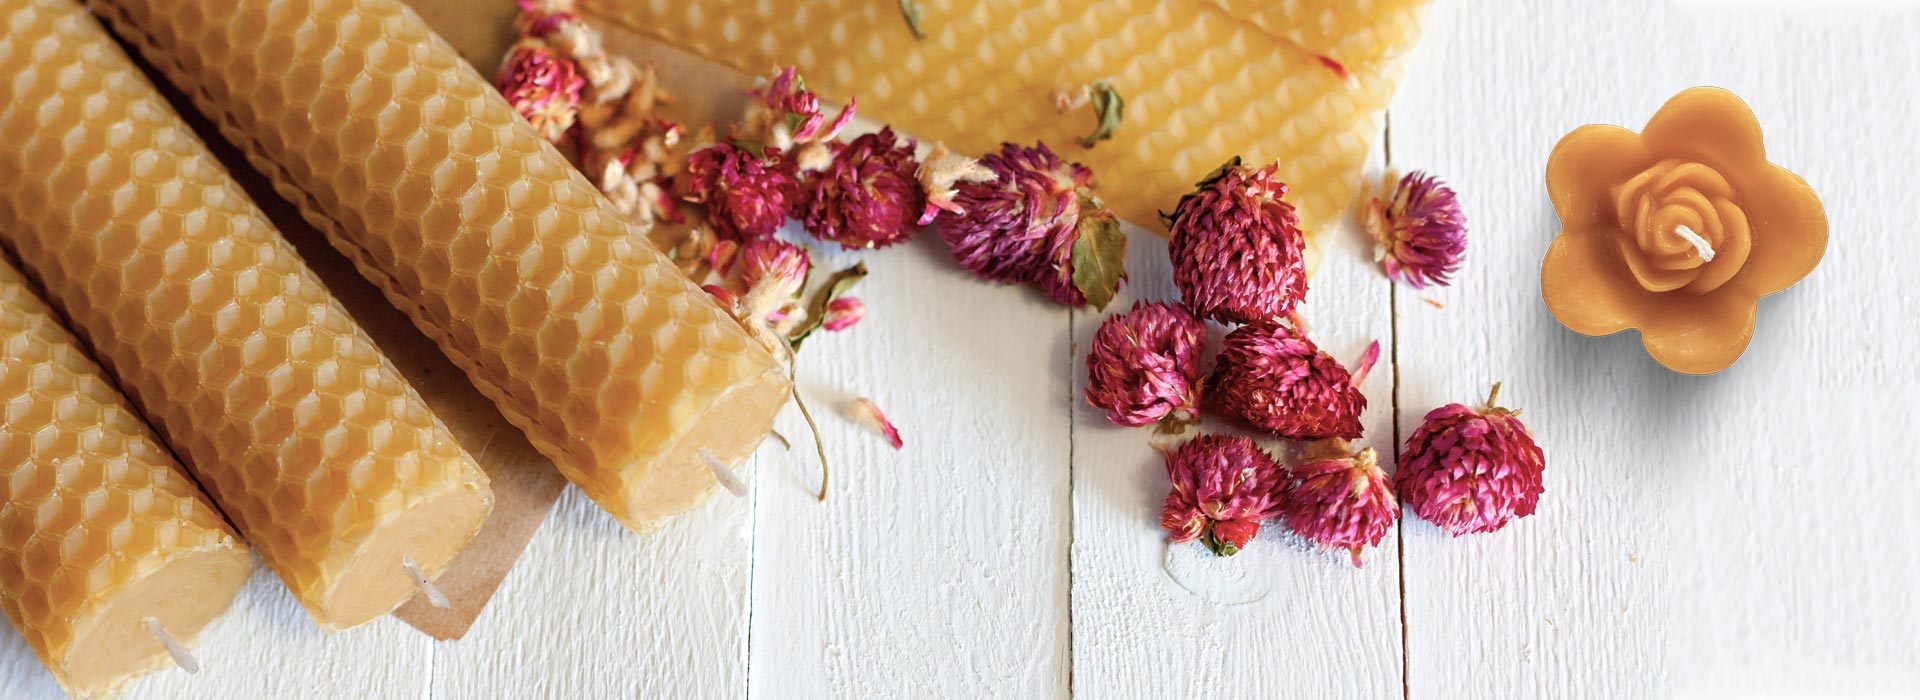 Bougie en cire d'abeille, pure opercule, mèche coton – BVBR – Marché  ambulant